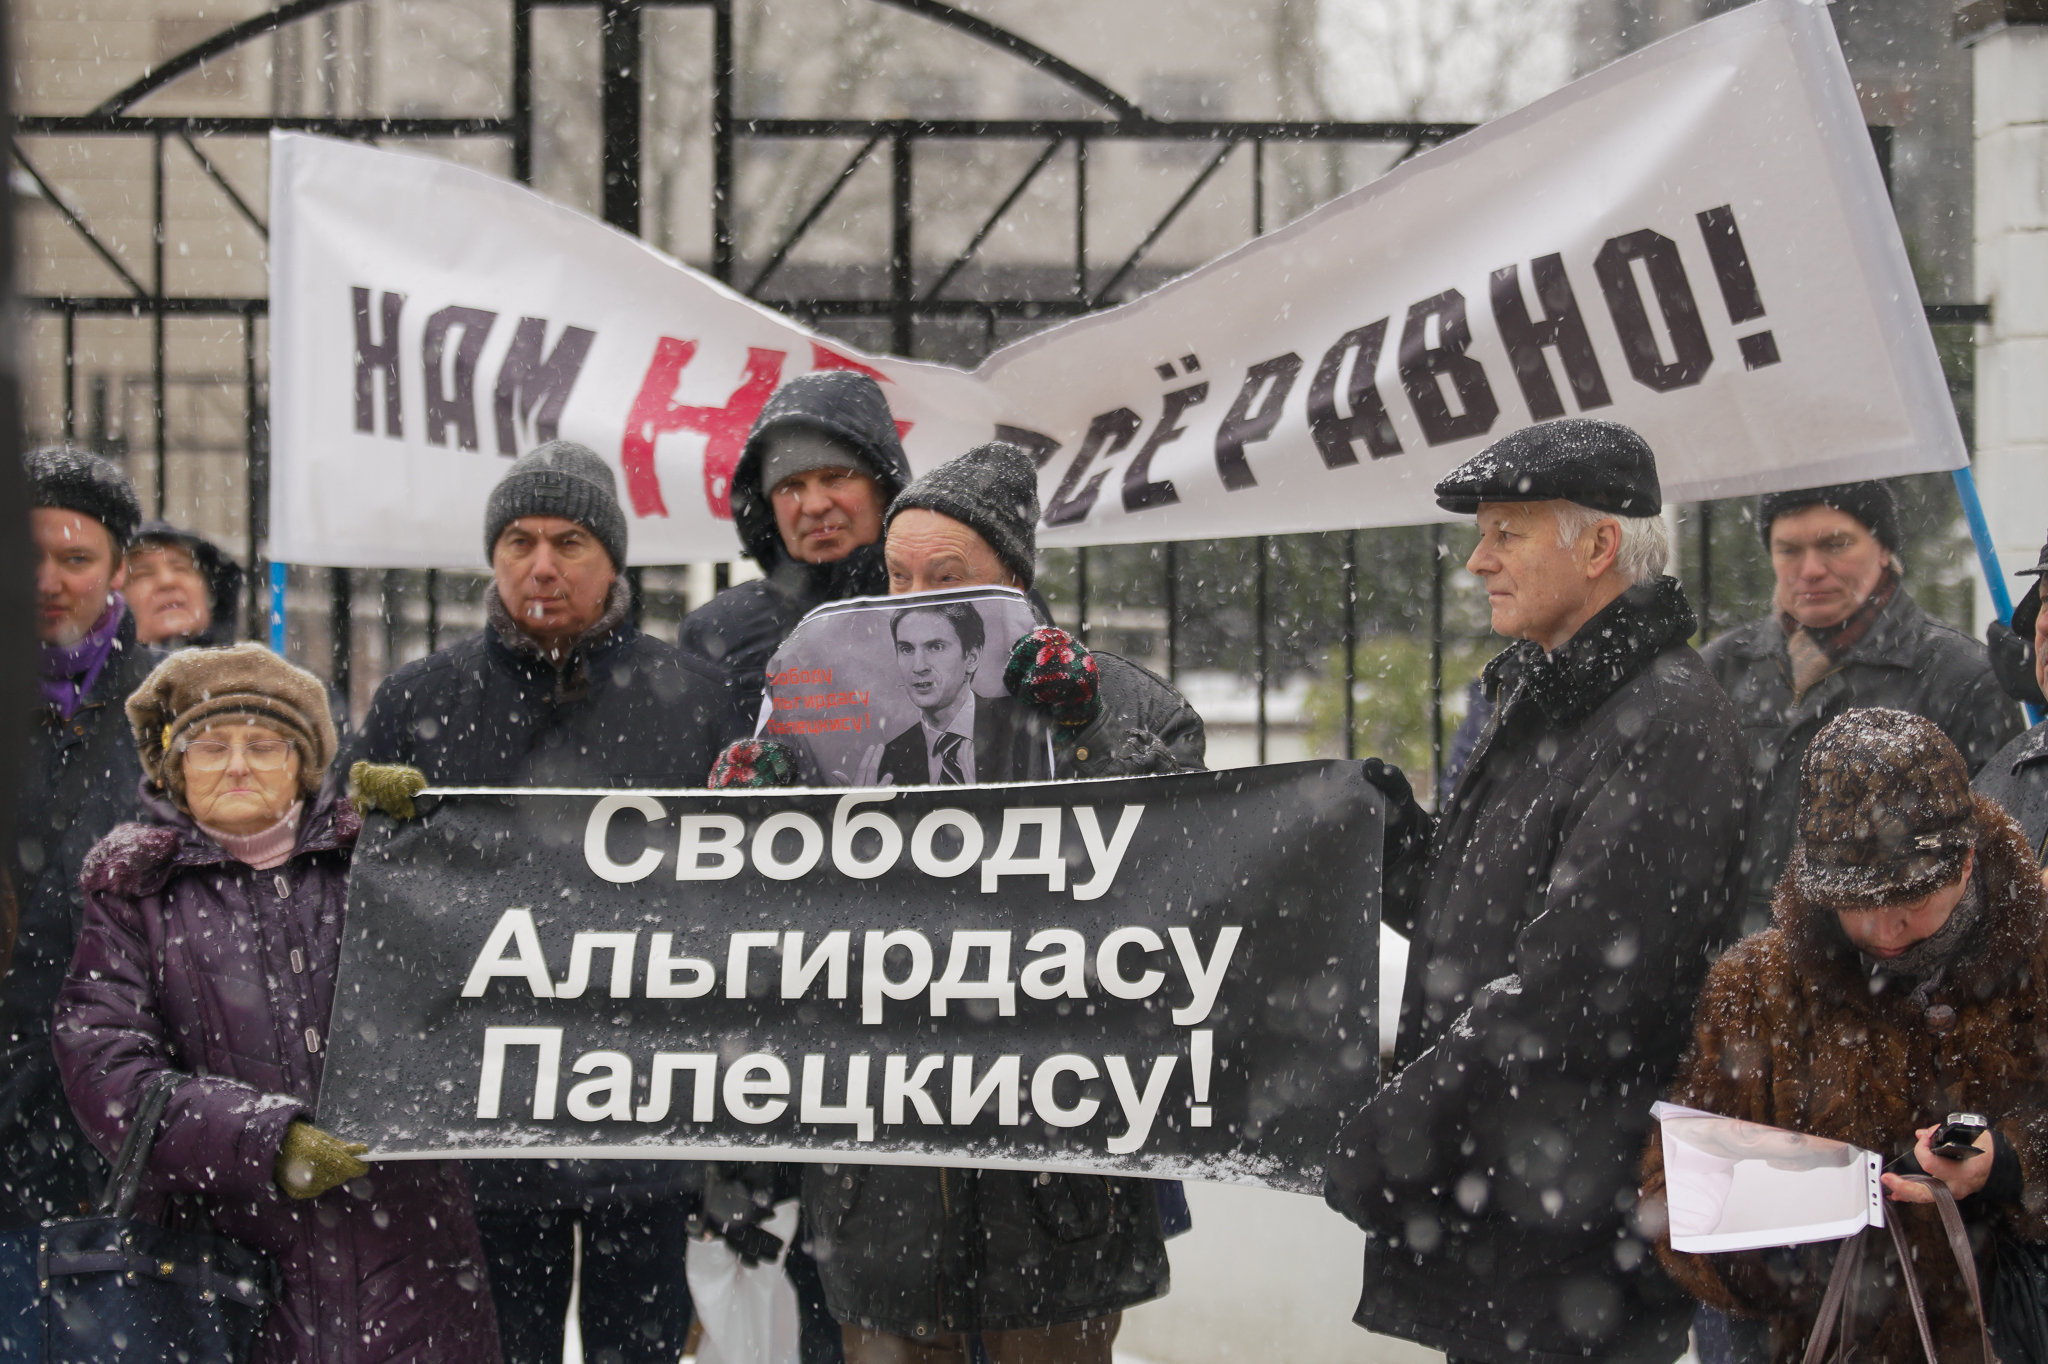 Пикет у посольства Литвы в Риге в защиту Палецкиса, 14 января 2019